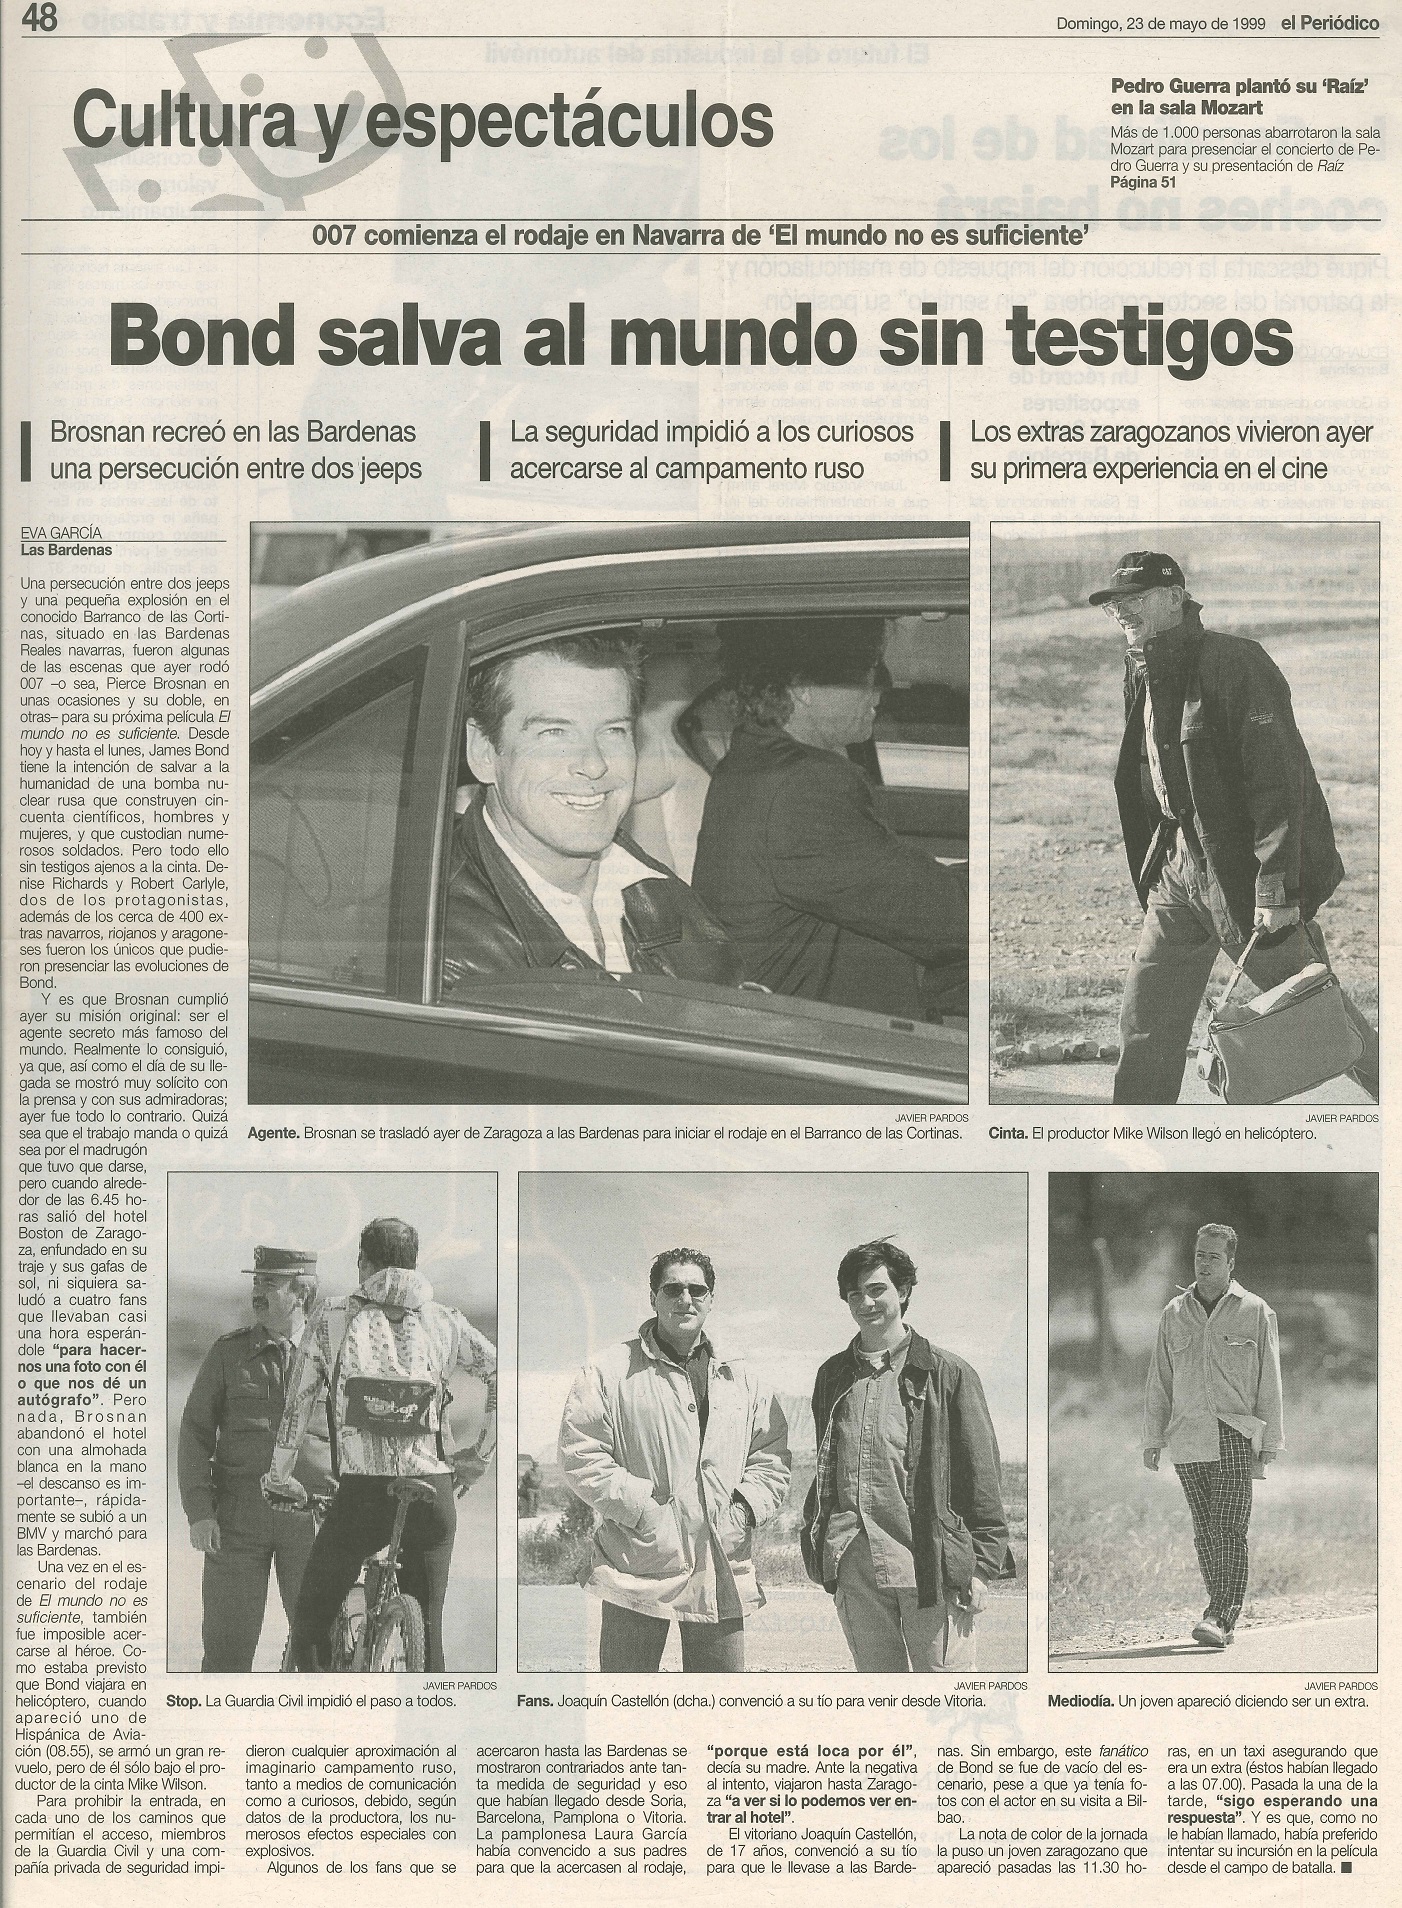 19 1999 05 23 El Periodico de Aragon 48 Rodaje Bardenas